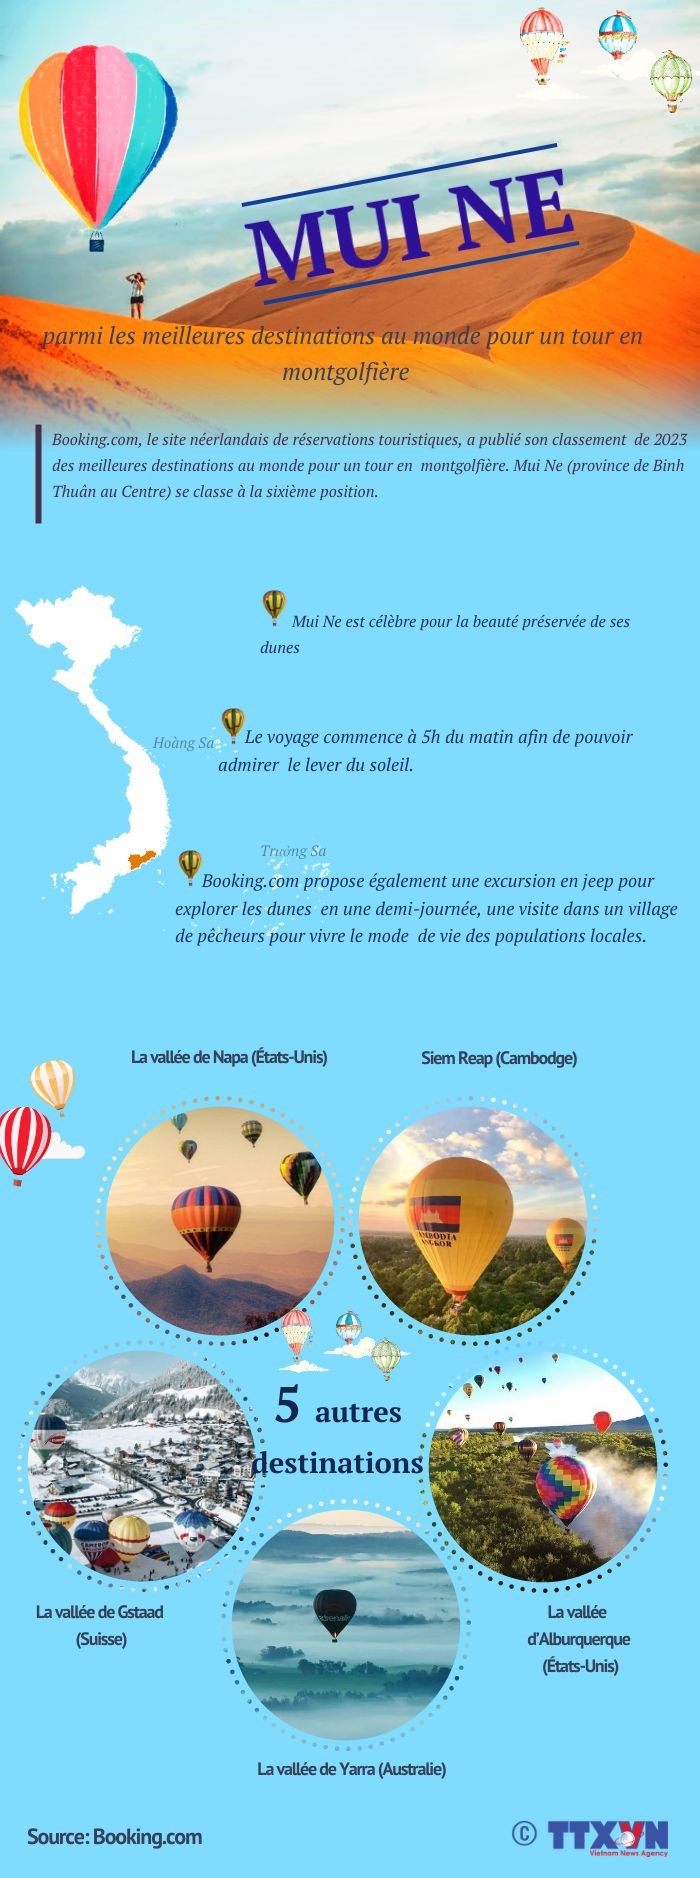 Mui Ne parmi les meilleures destinations au monde pour un tour en montgolfiere hinh anh 1